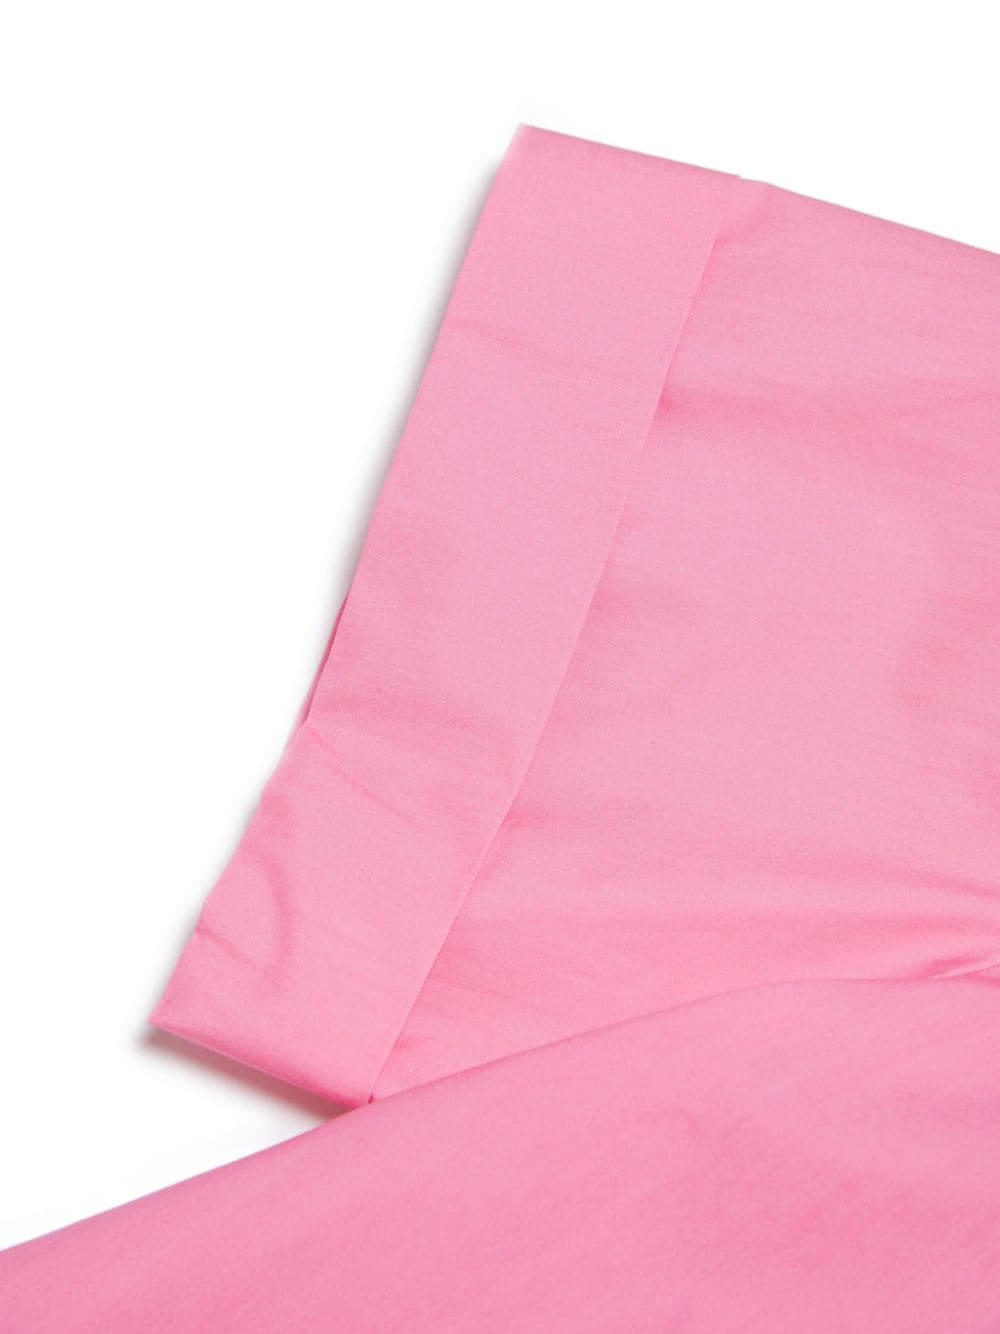 Camicia rosa unisex